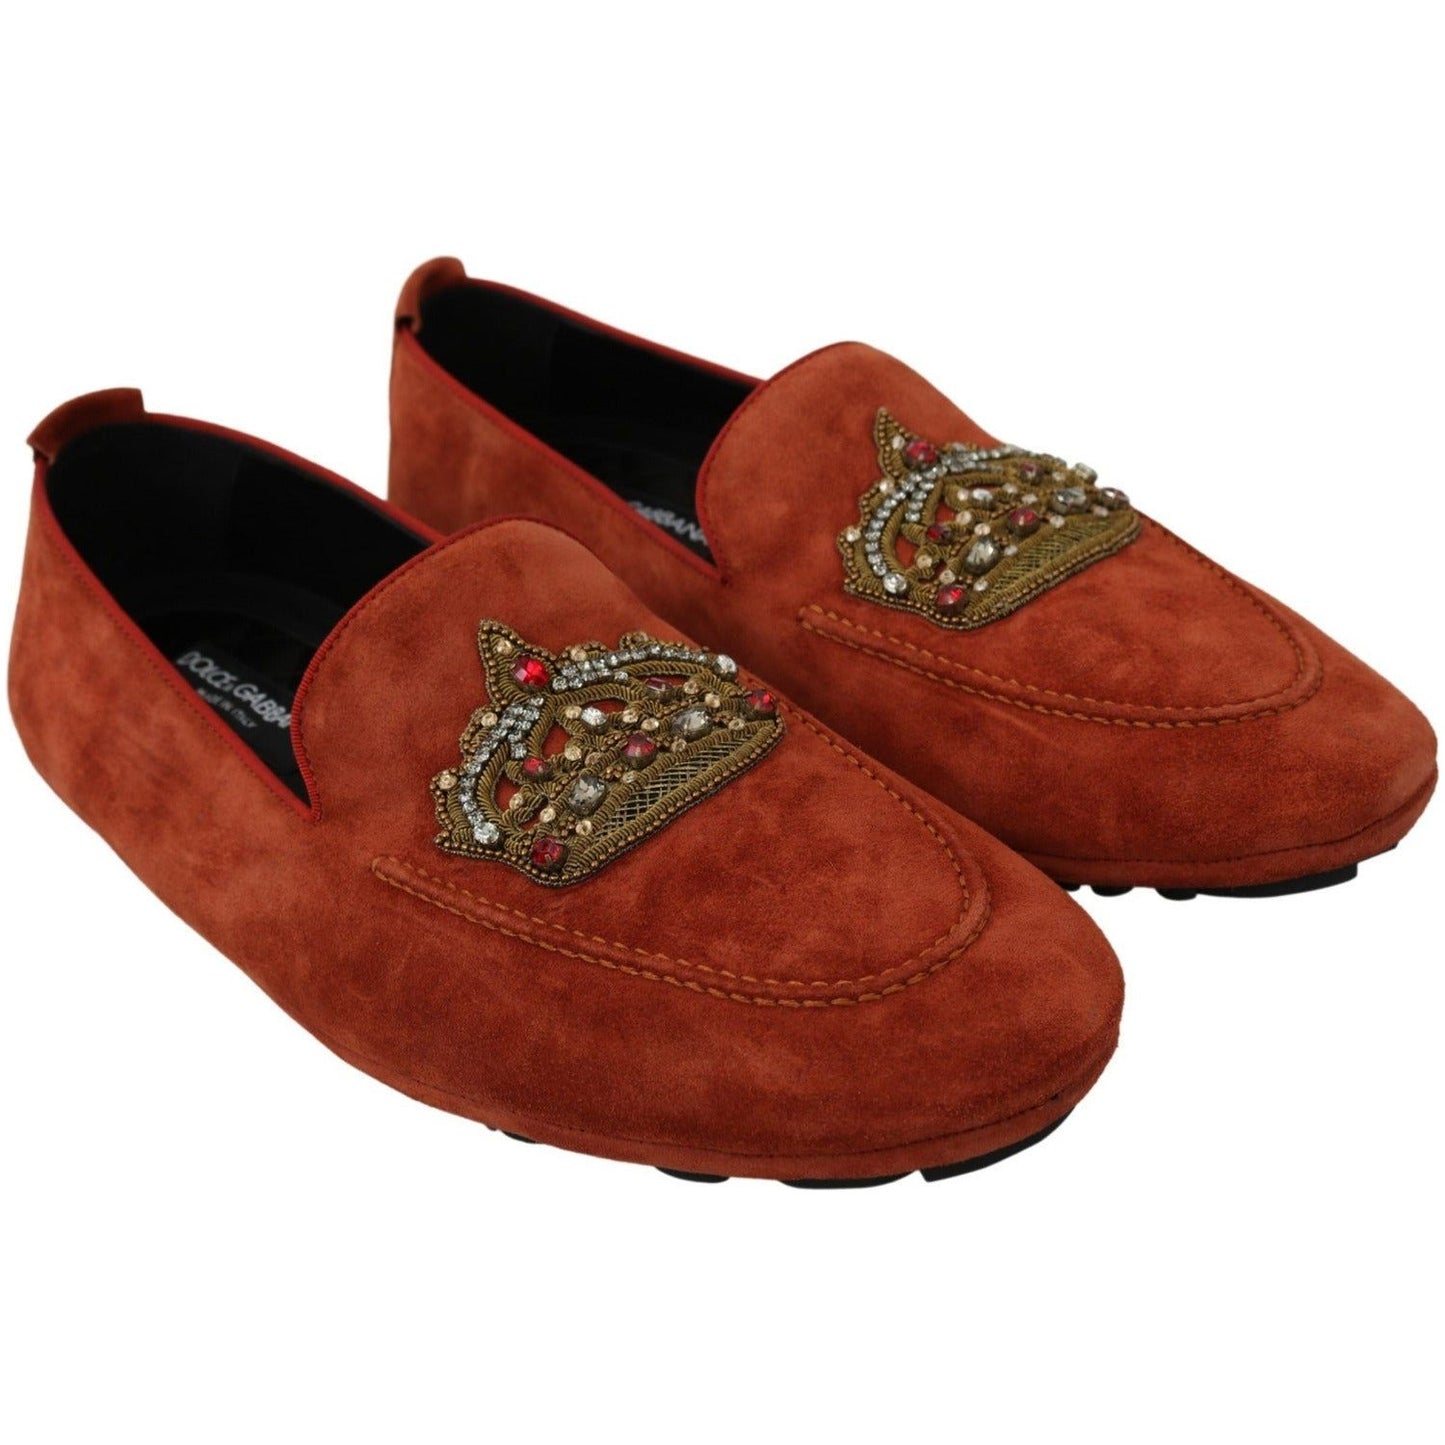 Dolce & Gabbana Elegant Orange Leather Moccasin Slippers orange-leather-moccasins-crystal-crown-slippers-shoes IMG_7337-scaled-0a31f132-88e.jpg